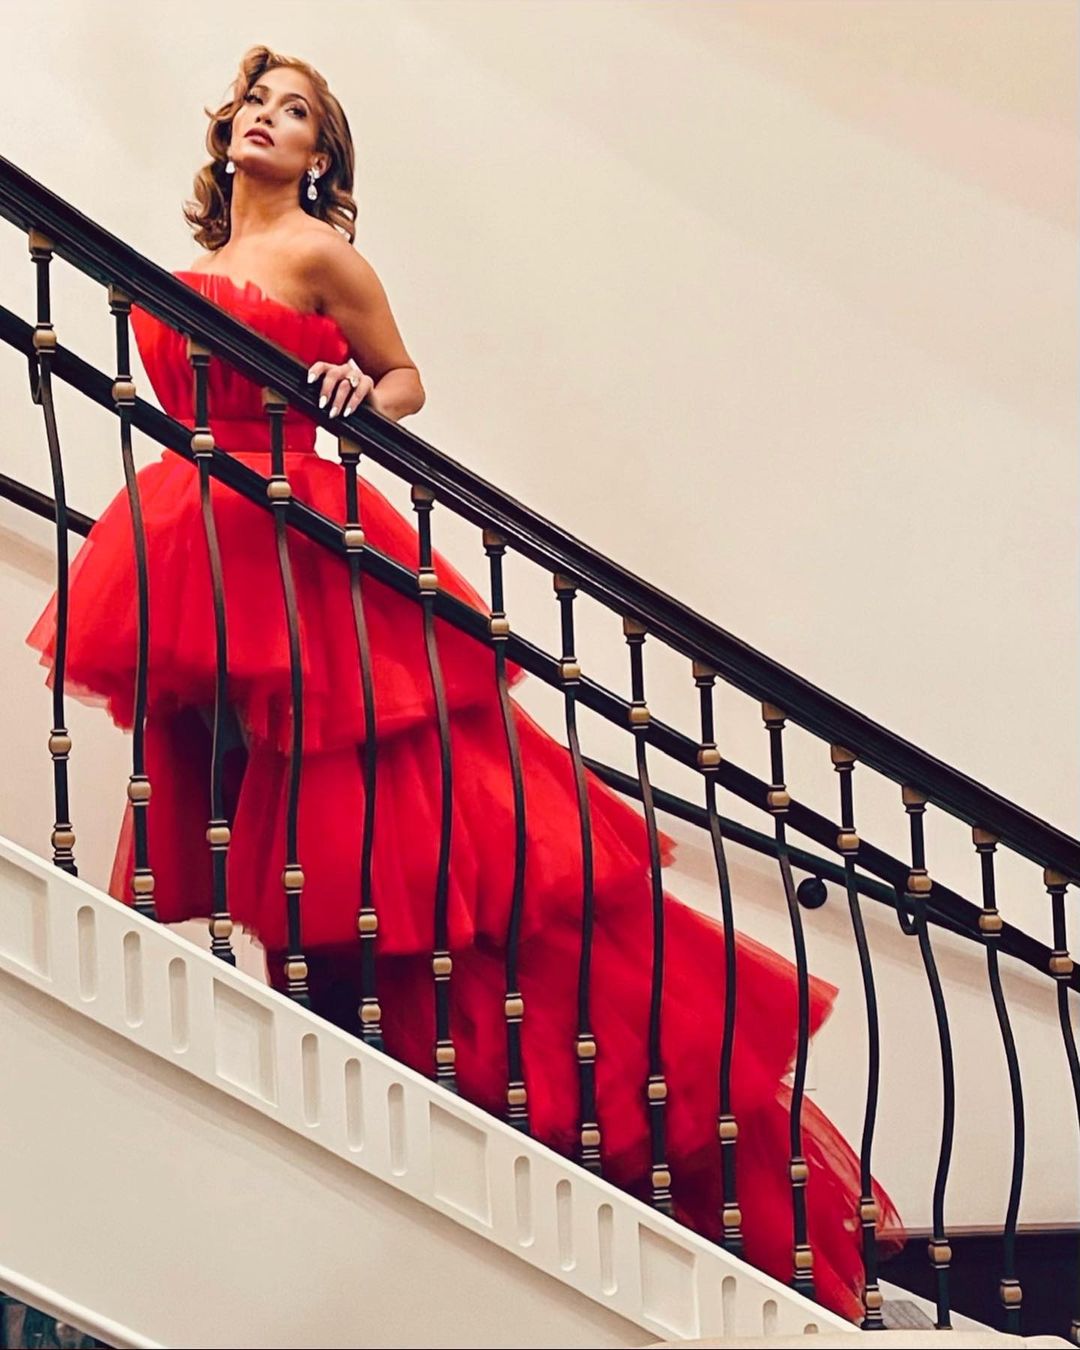 Как принцесса: Дженнифер Лопес в пышном красном платье и с голливудской укладкой произвела фурор